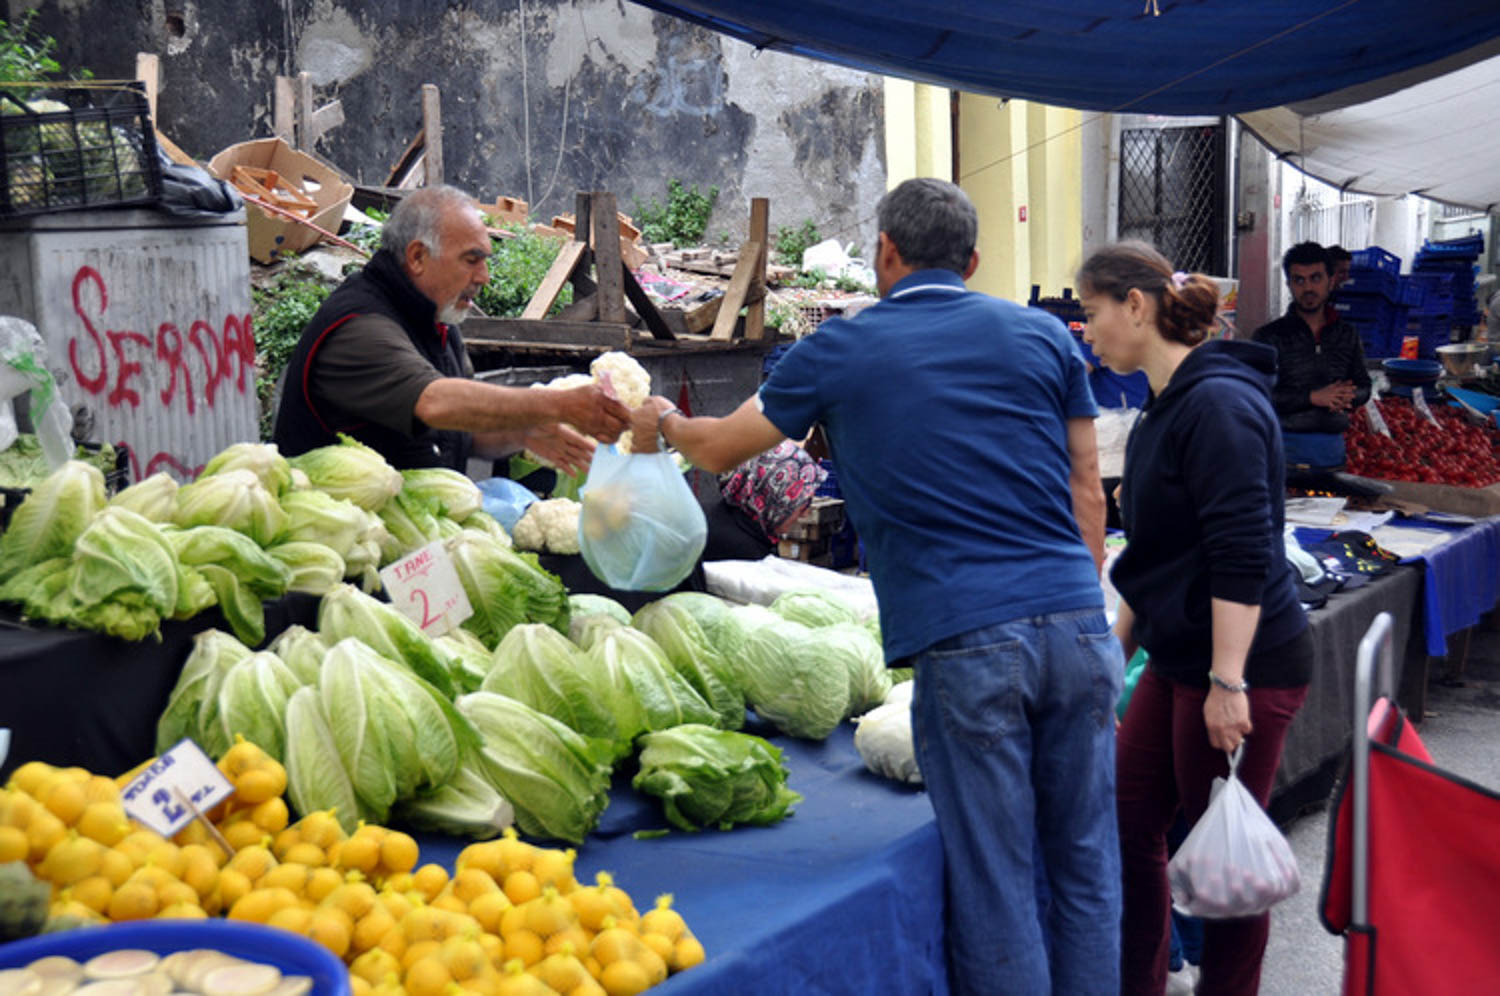 بازار التوابل: أشياء للقيام بها في إسطنبول